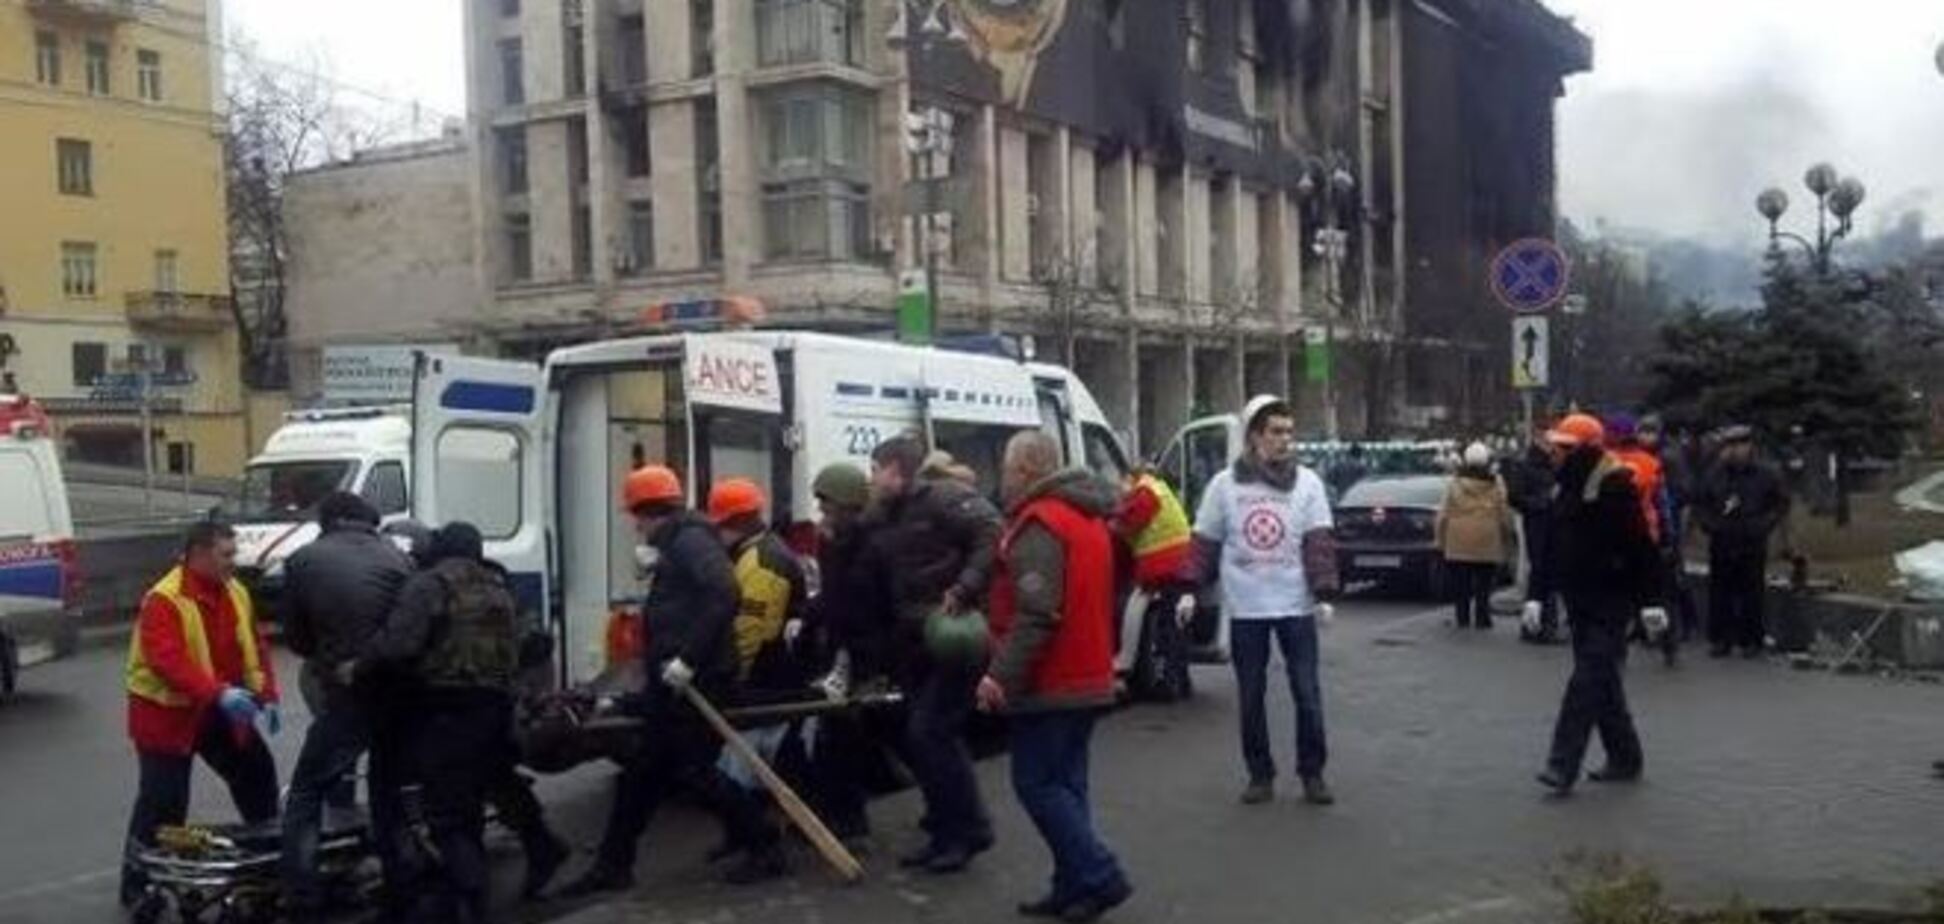 Правительство выплатит компенсации пострадавшим на Майдане